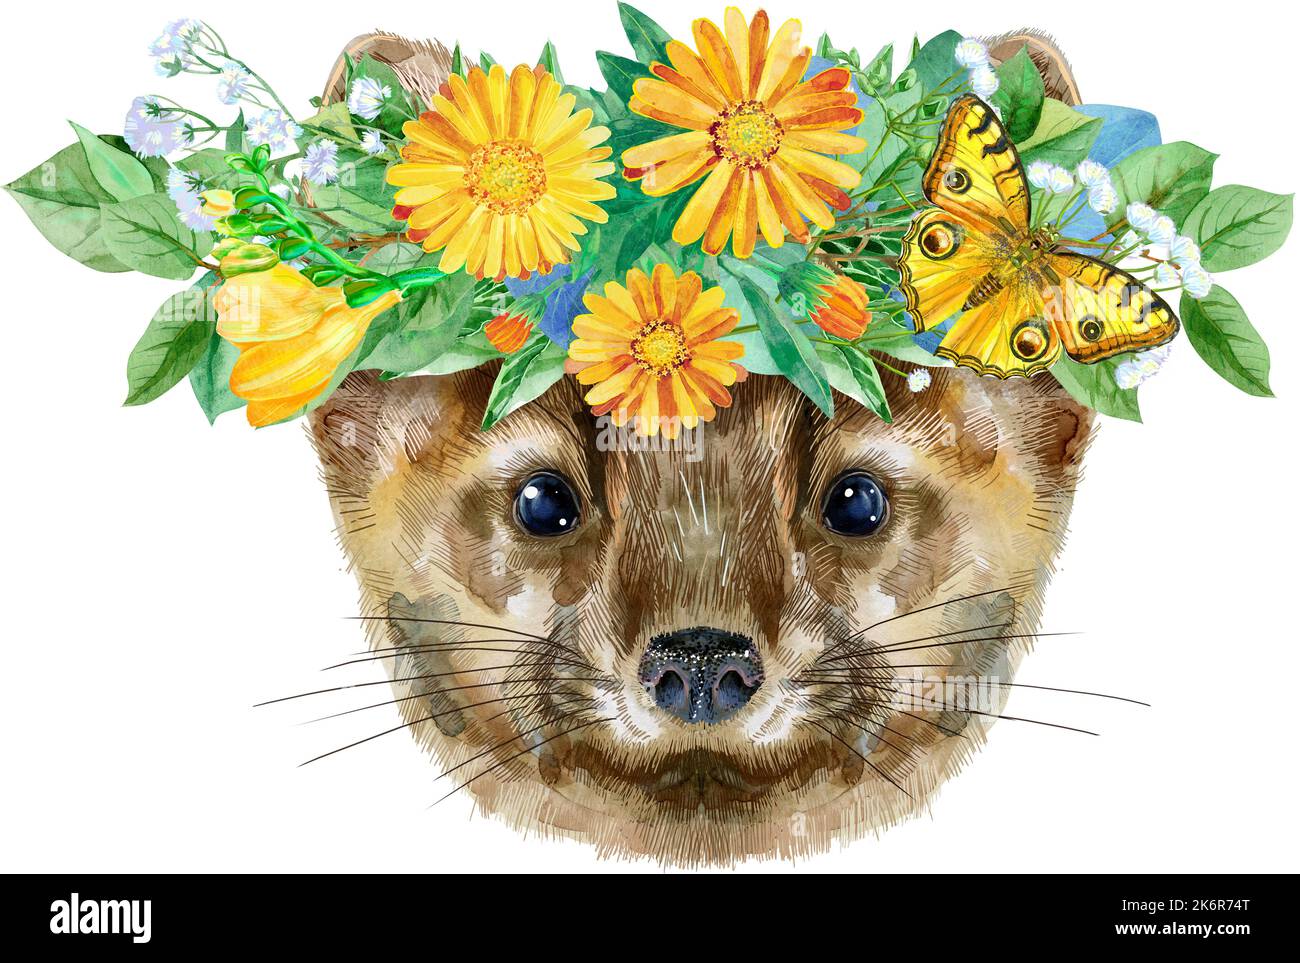 Piccolo, divertente, marrone in corona di fiori, immagine isolata, acquerello illustrazione Foto Stock